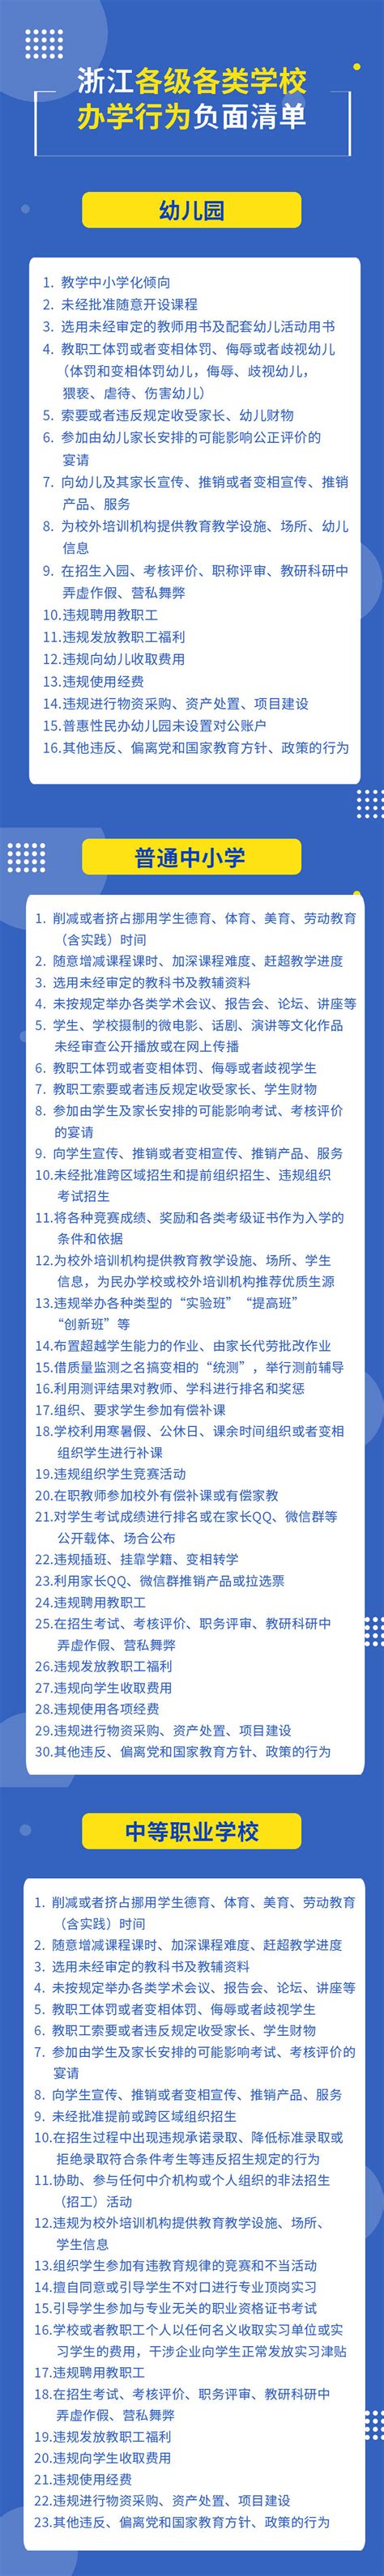 省教育厅发布各级各类学校小微权力清单和办学行为负面清单-小学教育-小学教育-杭州19楼